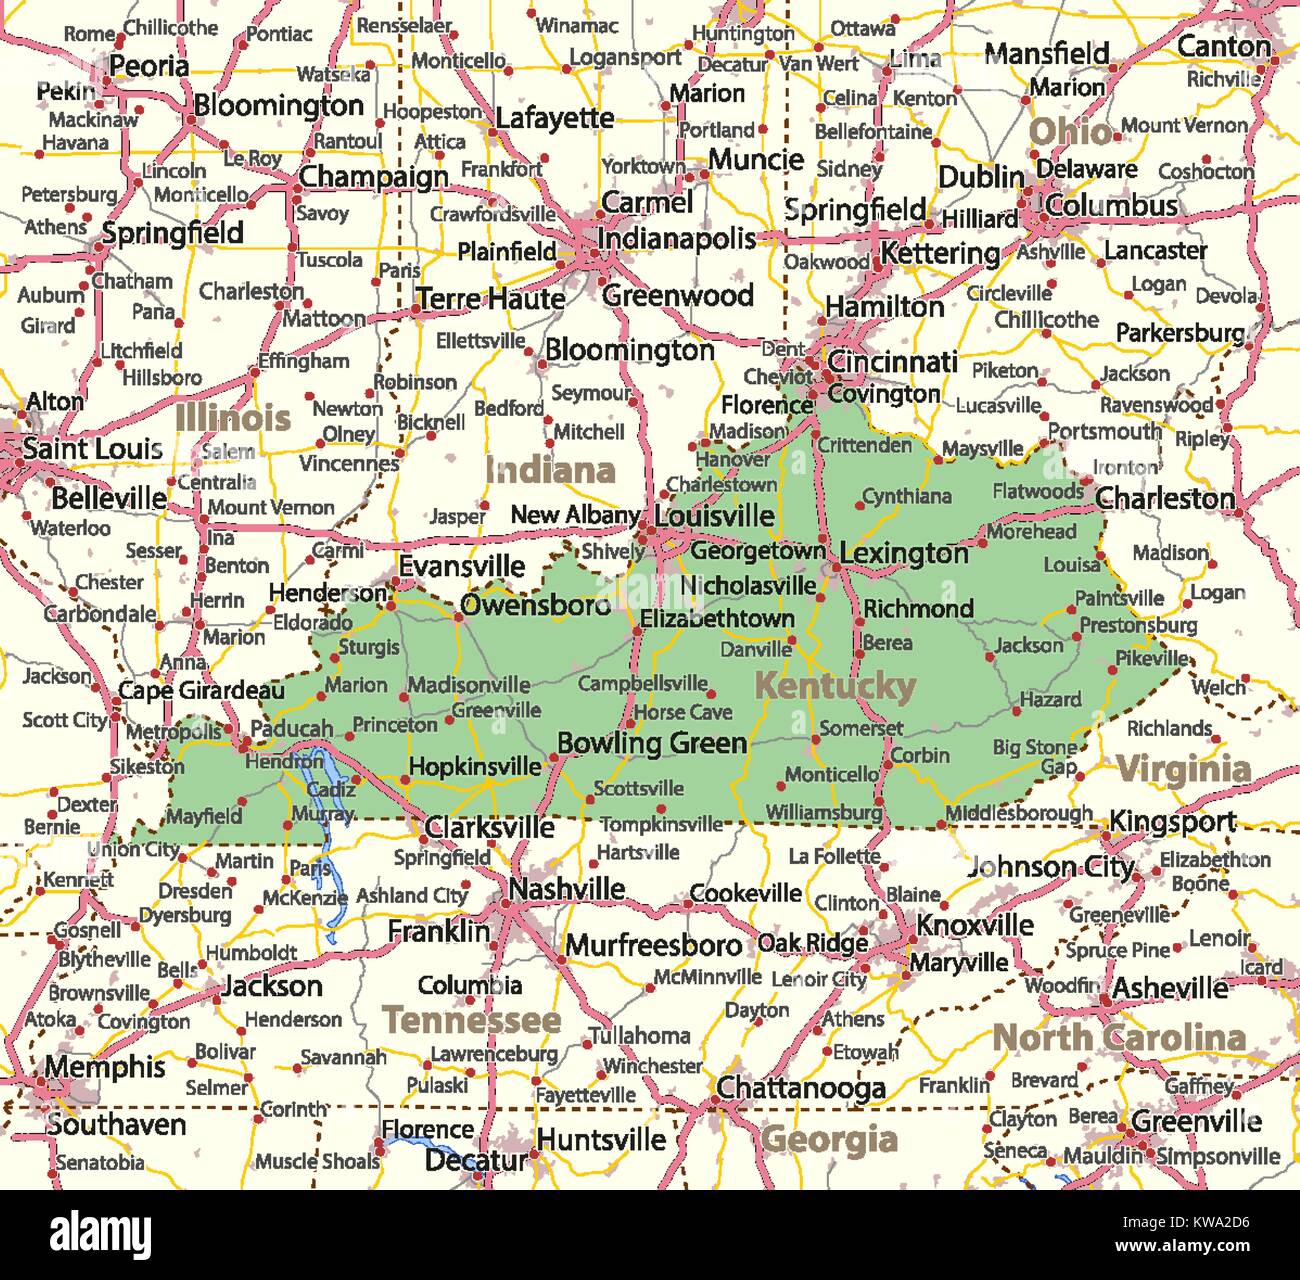 Mappa del Kentucky. Mostra i confini, zone urbane, nomi di località, strade e autostrade. Proiezione: proiezione di Mercatore. Illustrazione Vettoriale